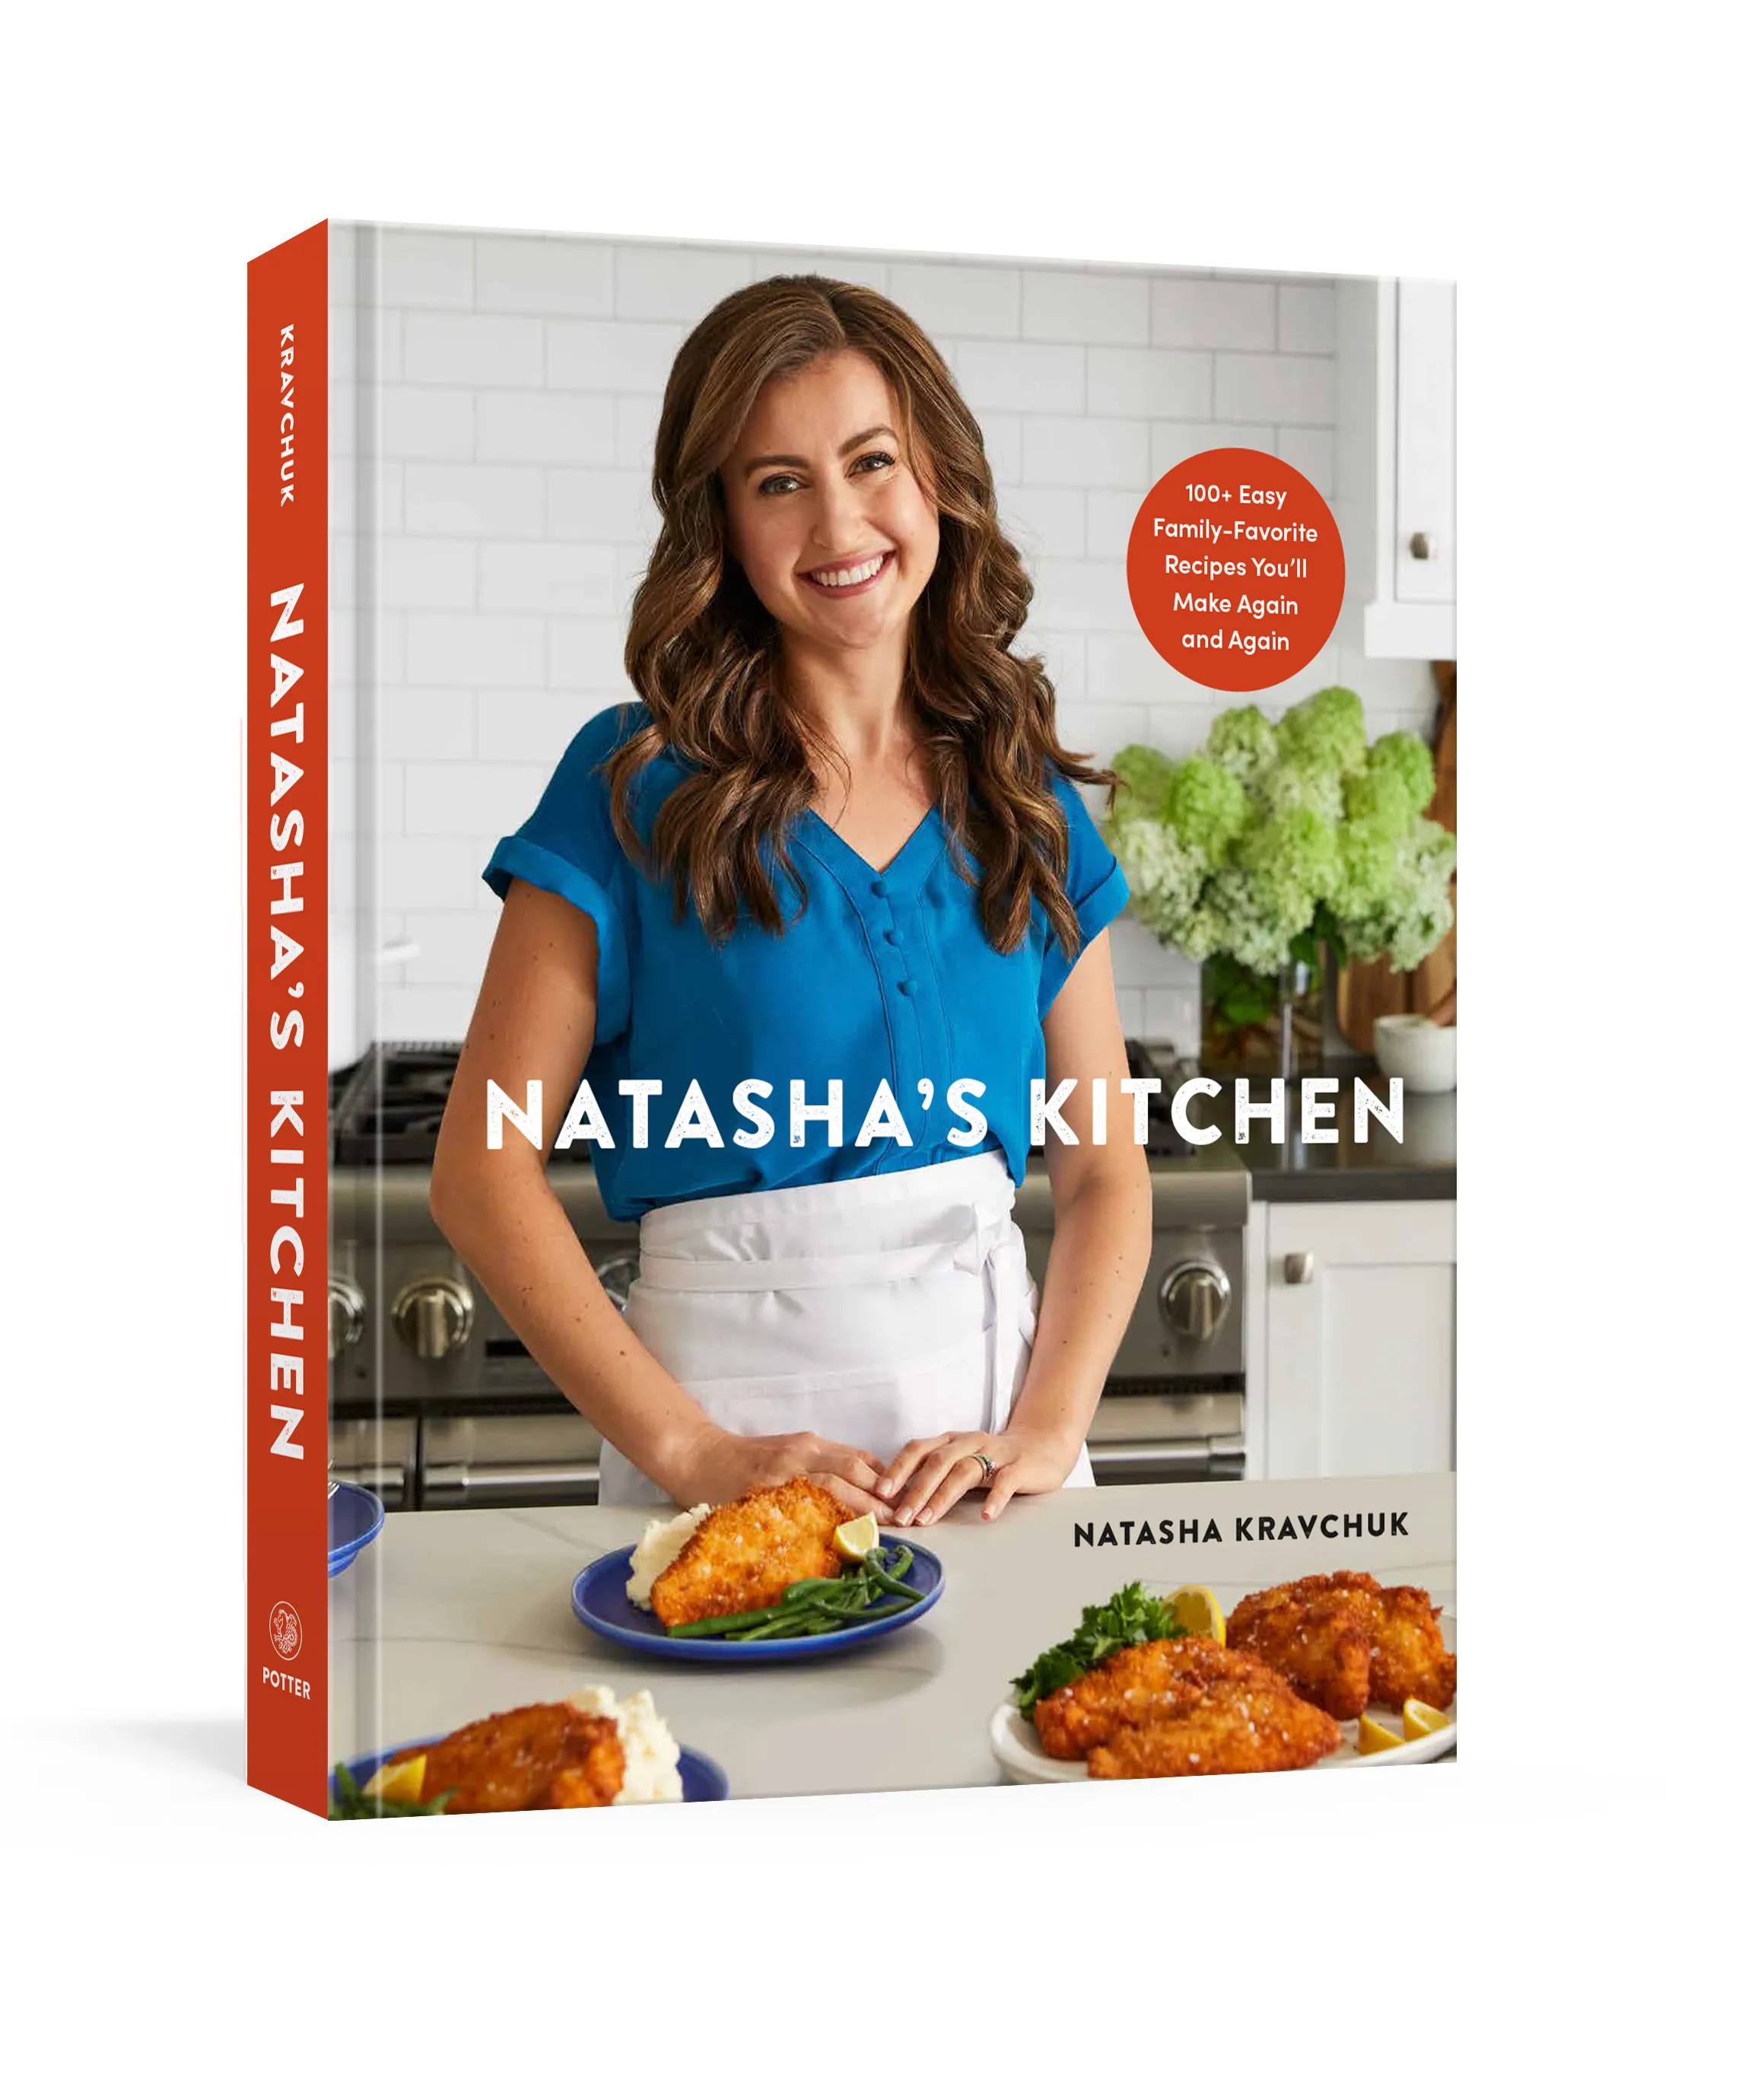 Natasha's new cookbook.